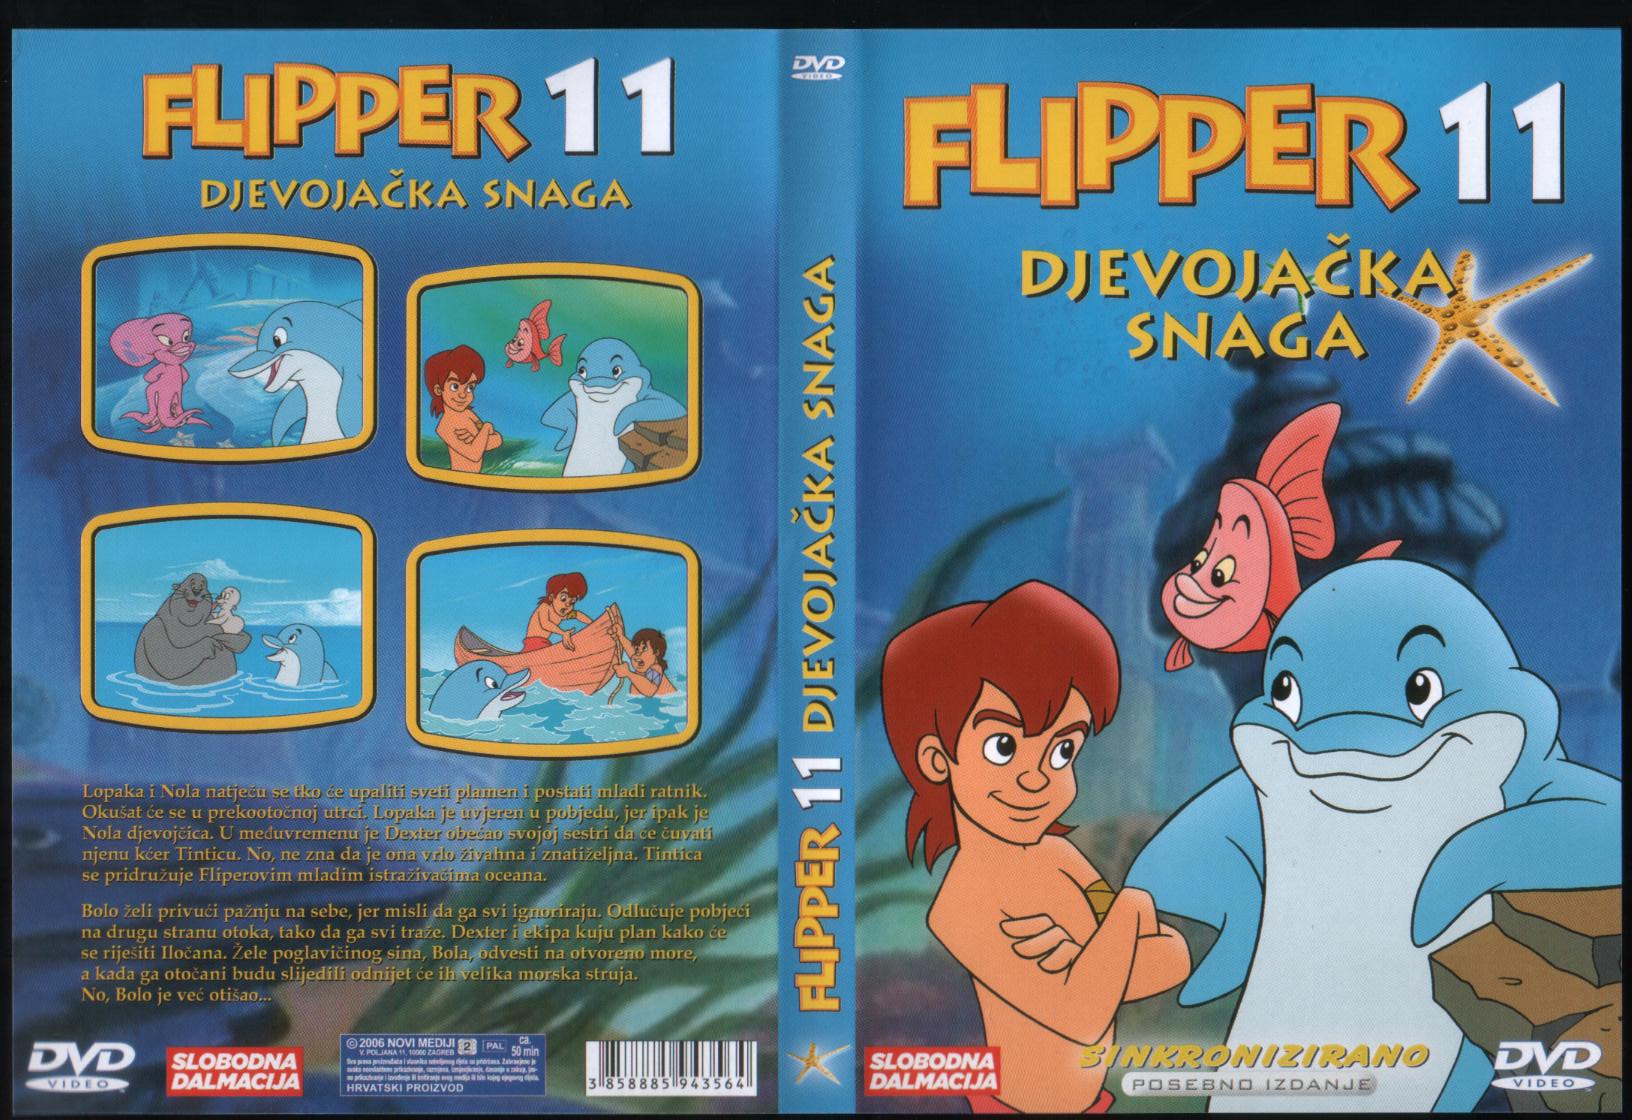 Click to view full size image -  DVD Cover - F - DVD- FLIPPER11.jpg - DVD- FLIPPER11.jpg